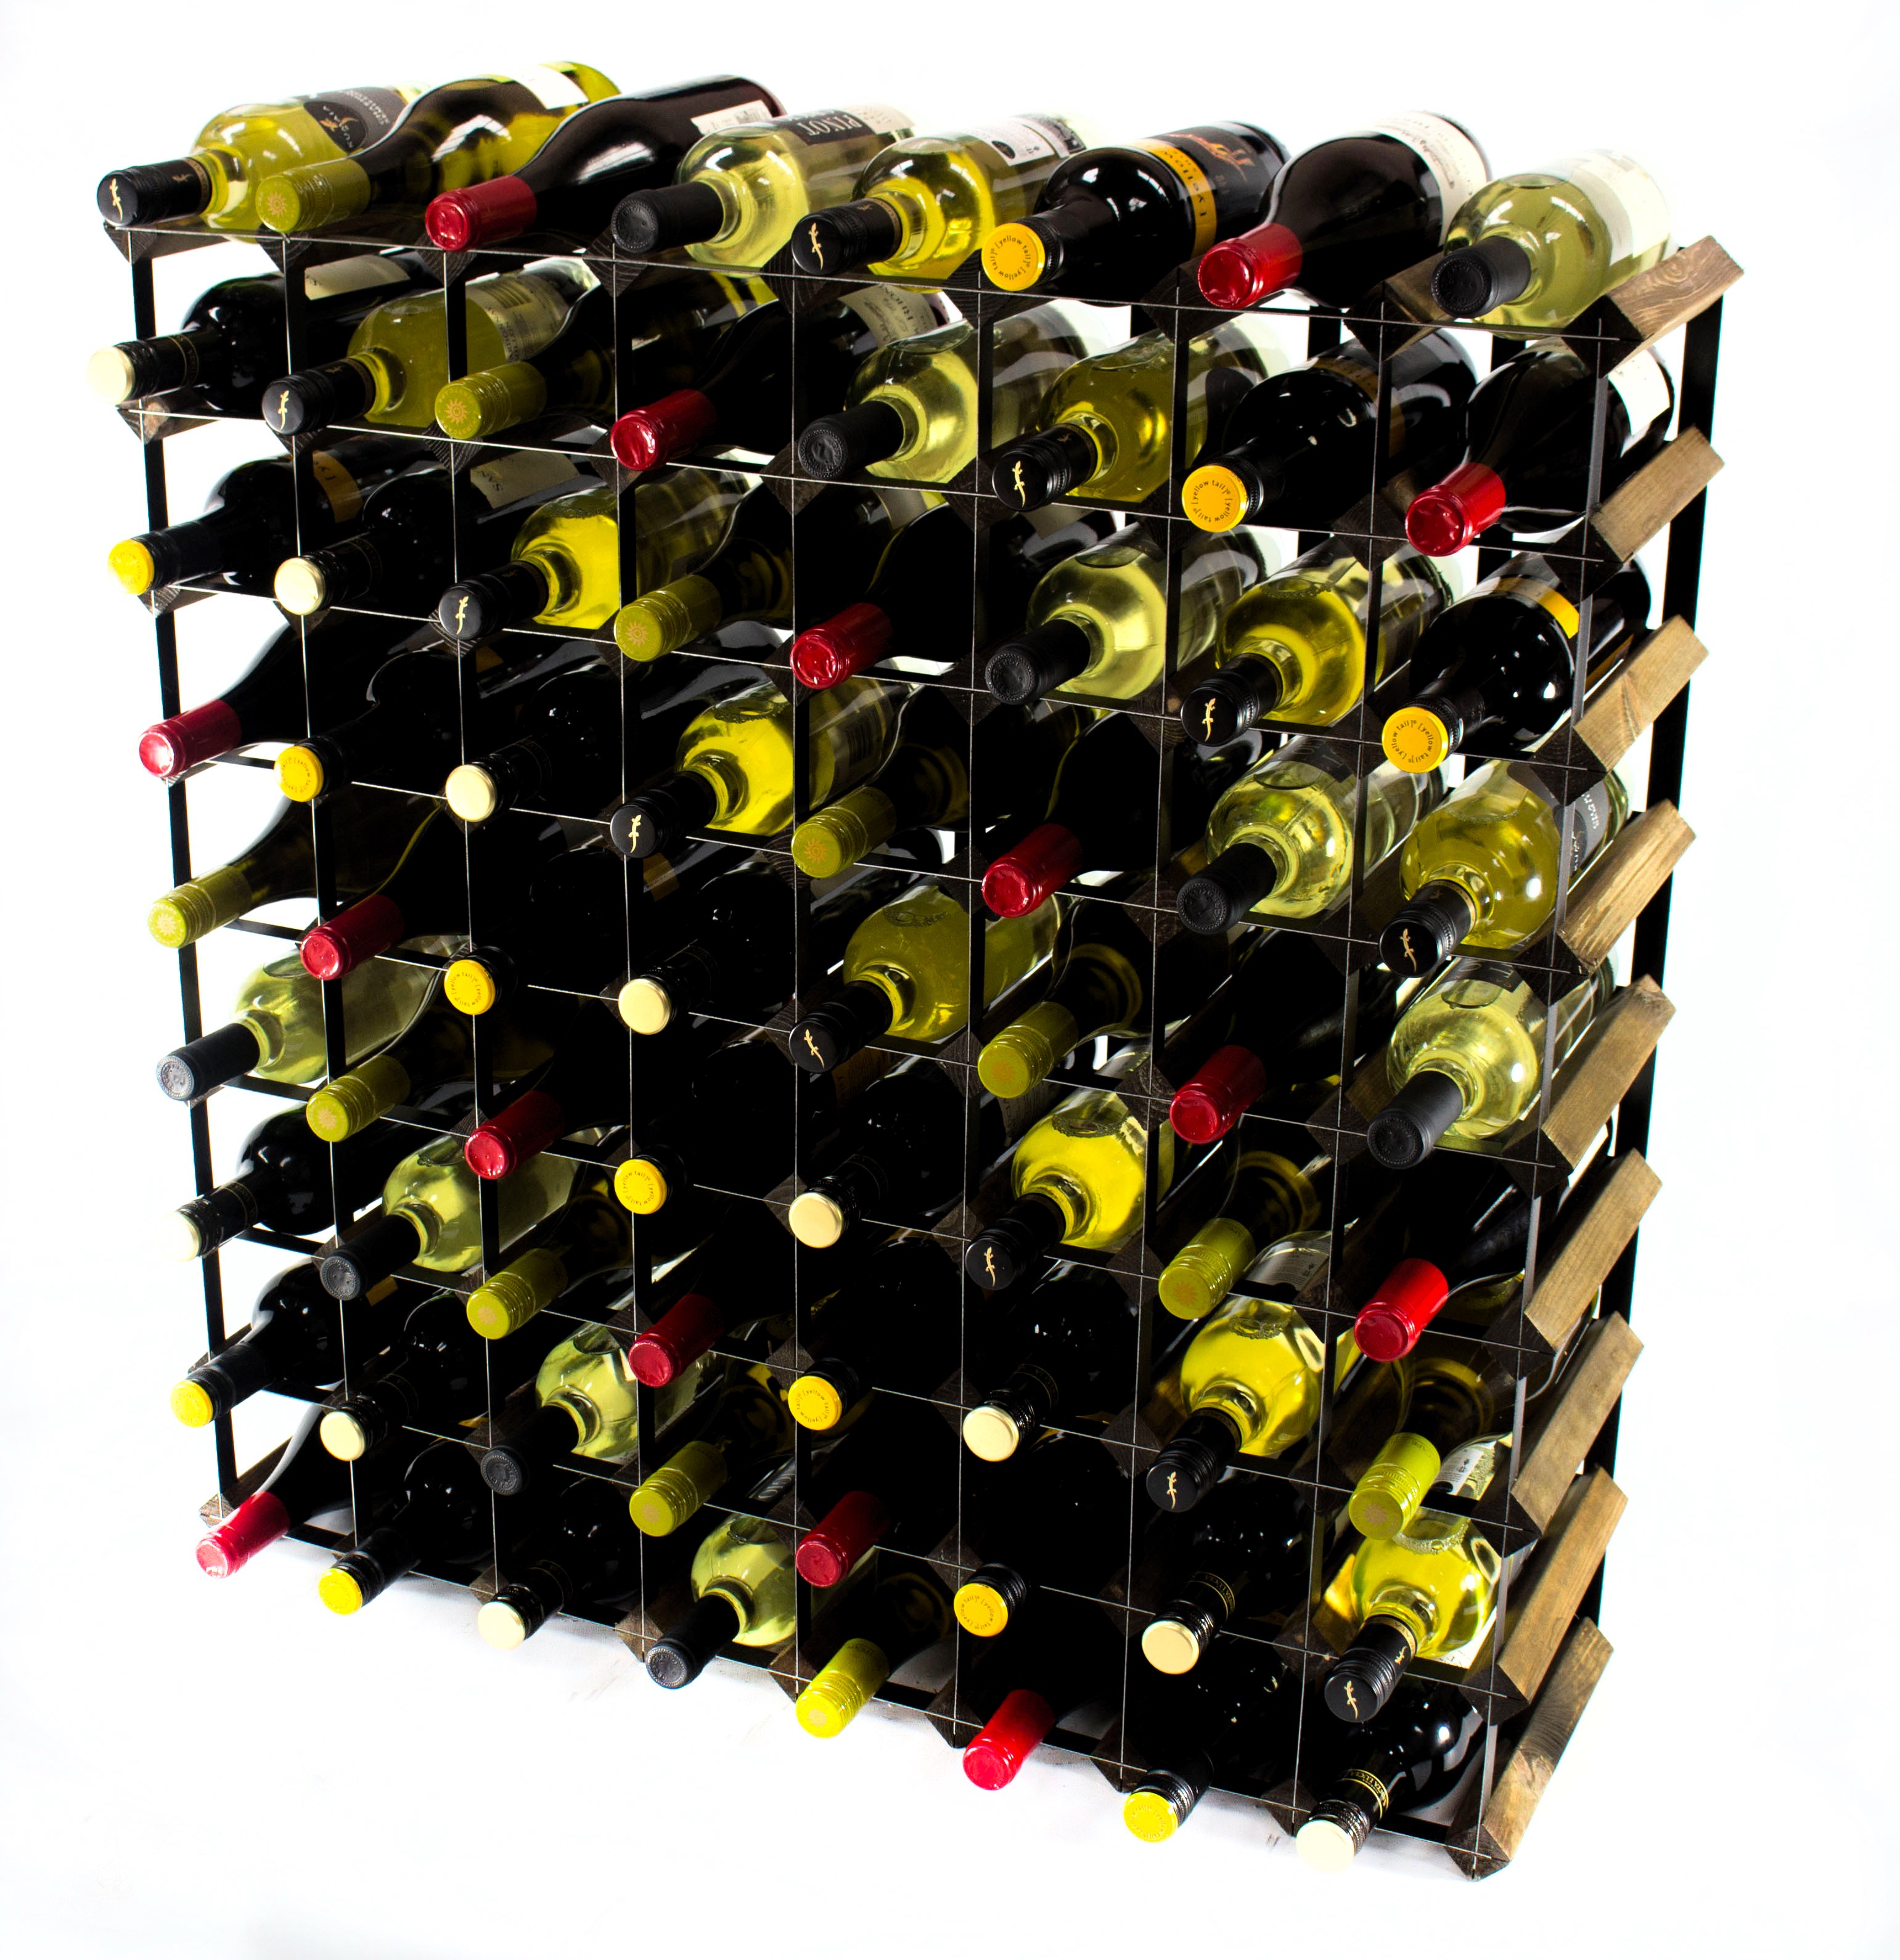 Cranville wine rack storage 72 bottle black stain wood and black metal assembled